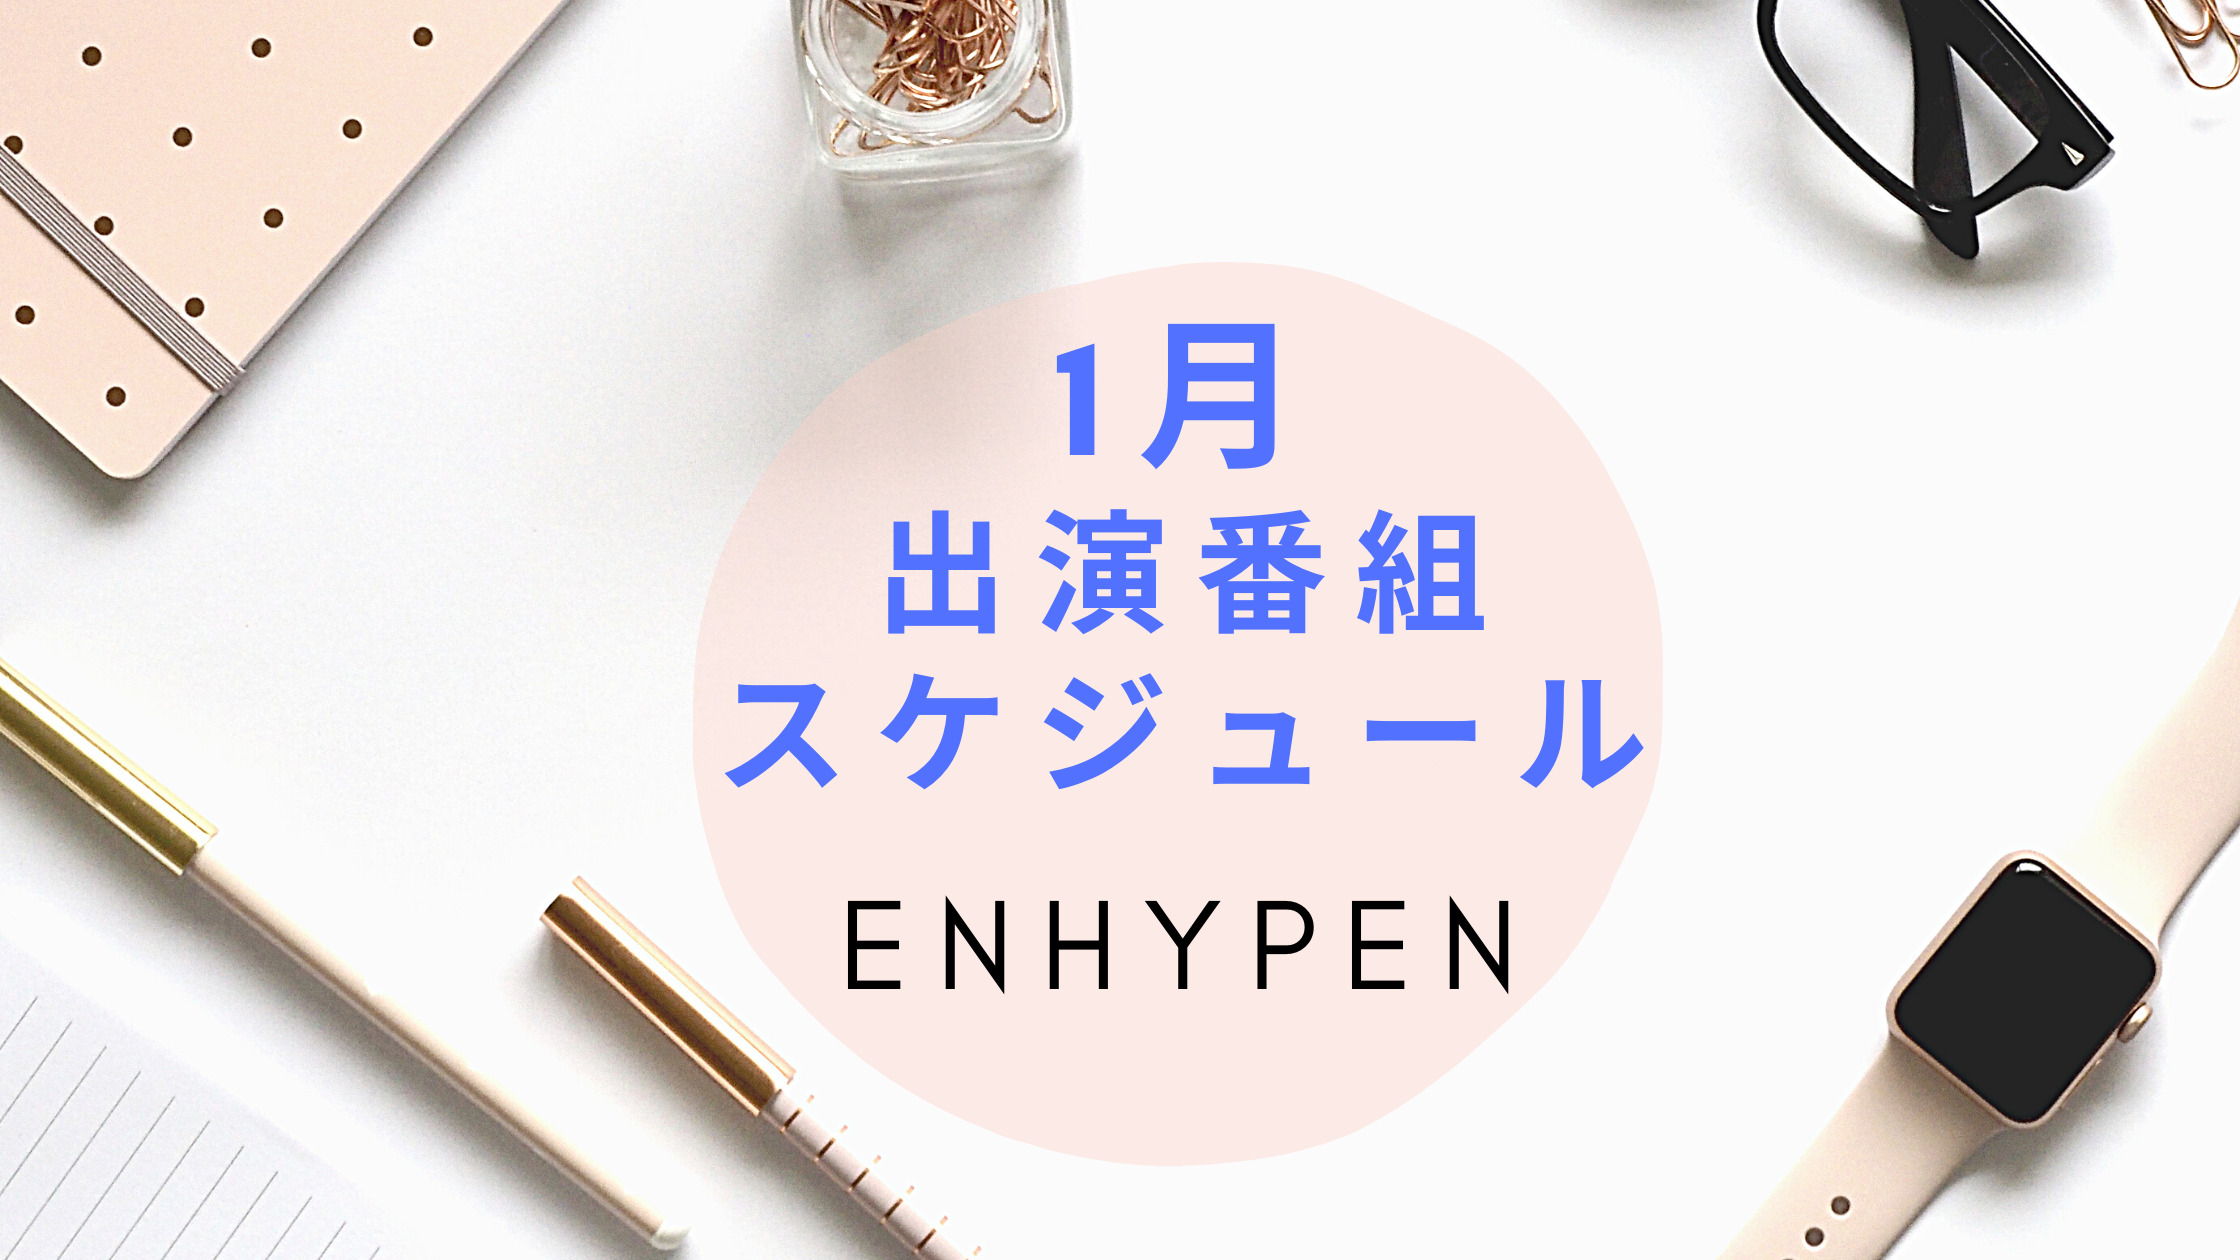 Enhypen1月出演番組 スケジュールまとめ 22年1月 Shikaのひらめき